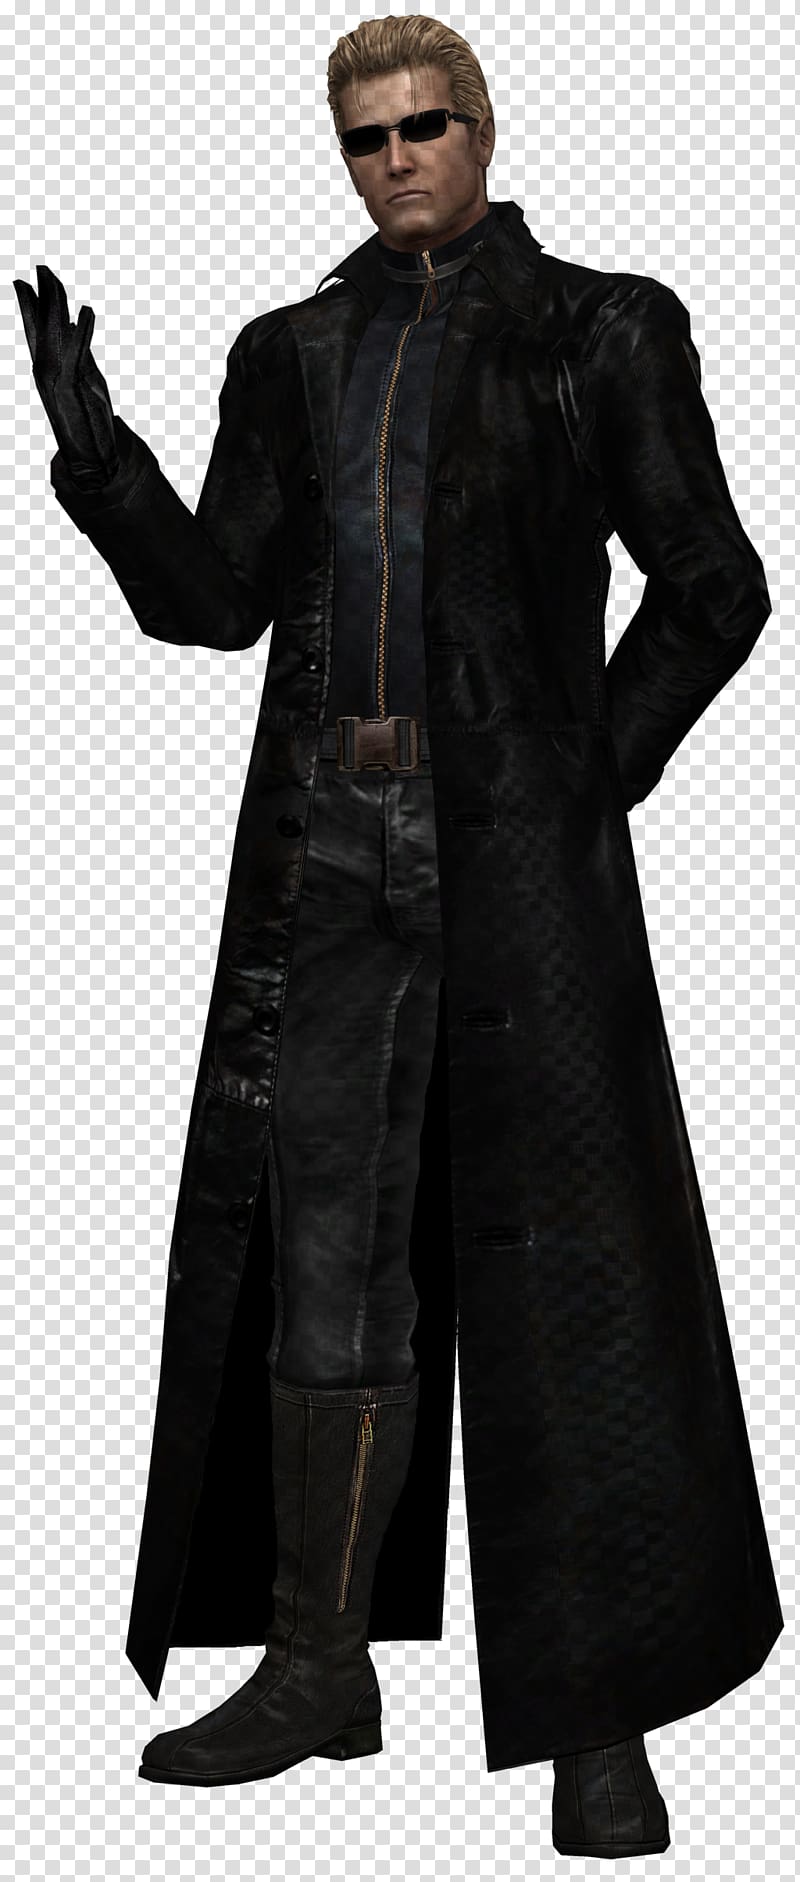 Albert Wesker Resident Evil 5 Jake Muller Video game, others transparent background PNG clipart